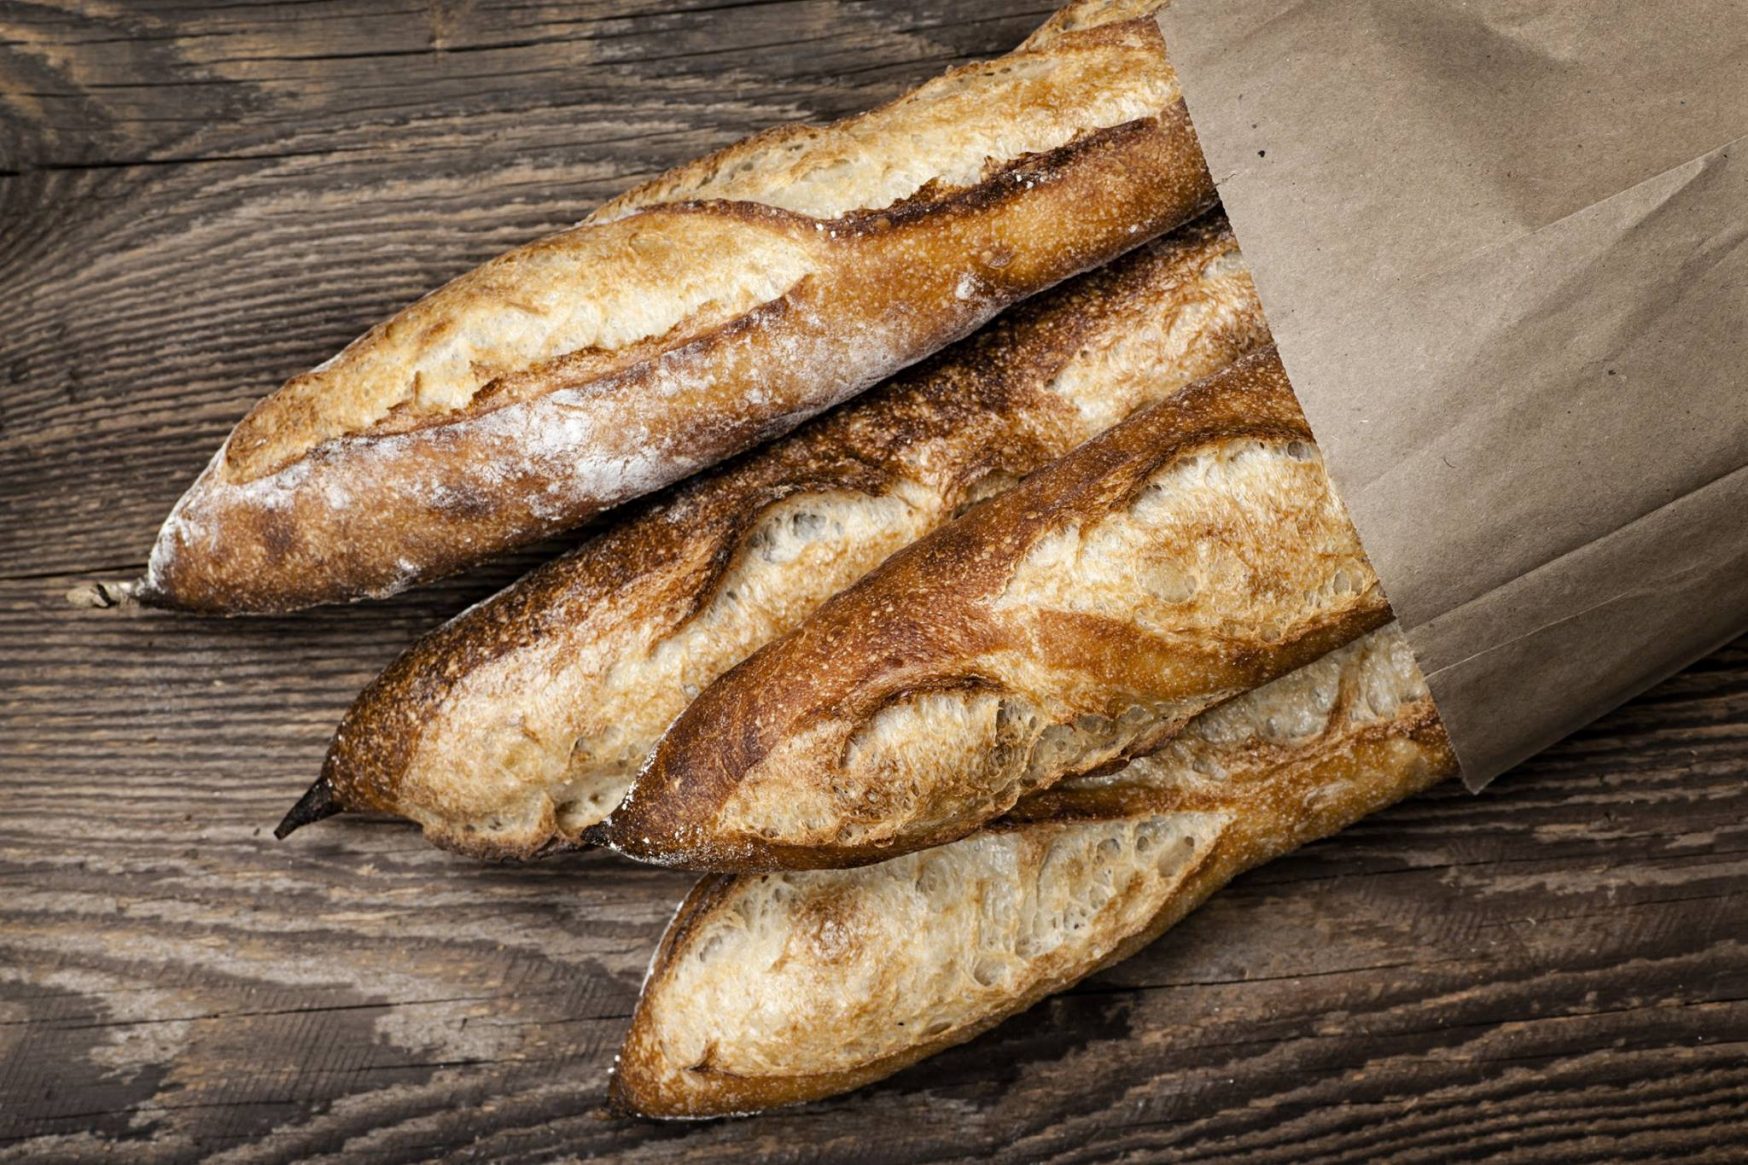 Innovative social enterprise Freedom Bakery makes artisan baguettes